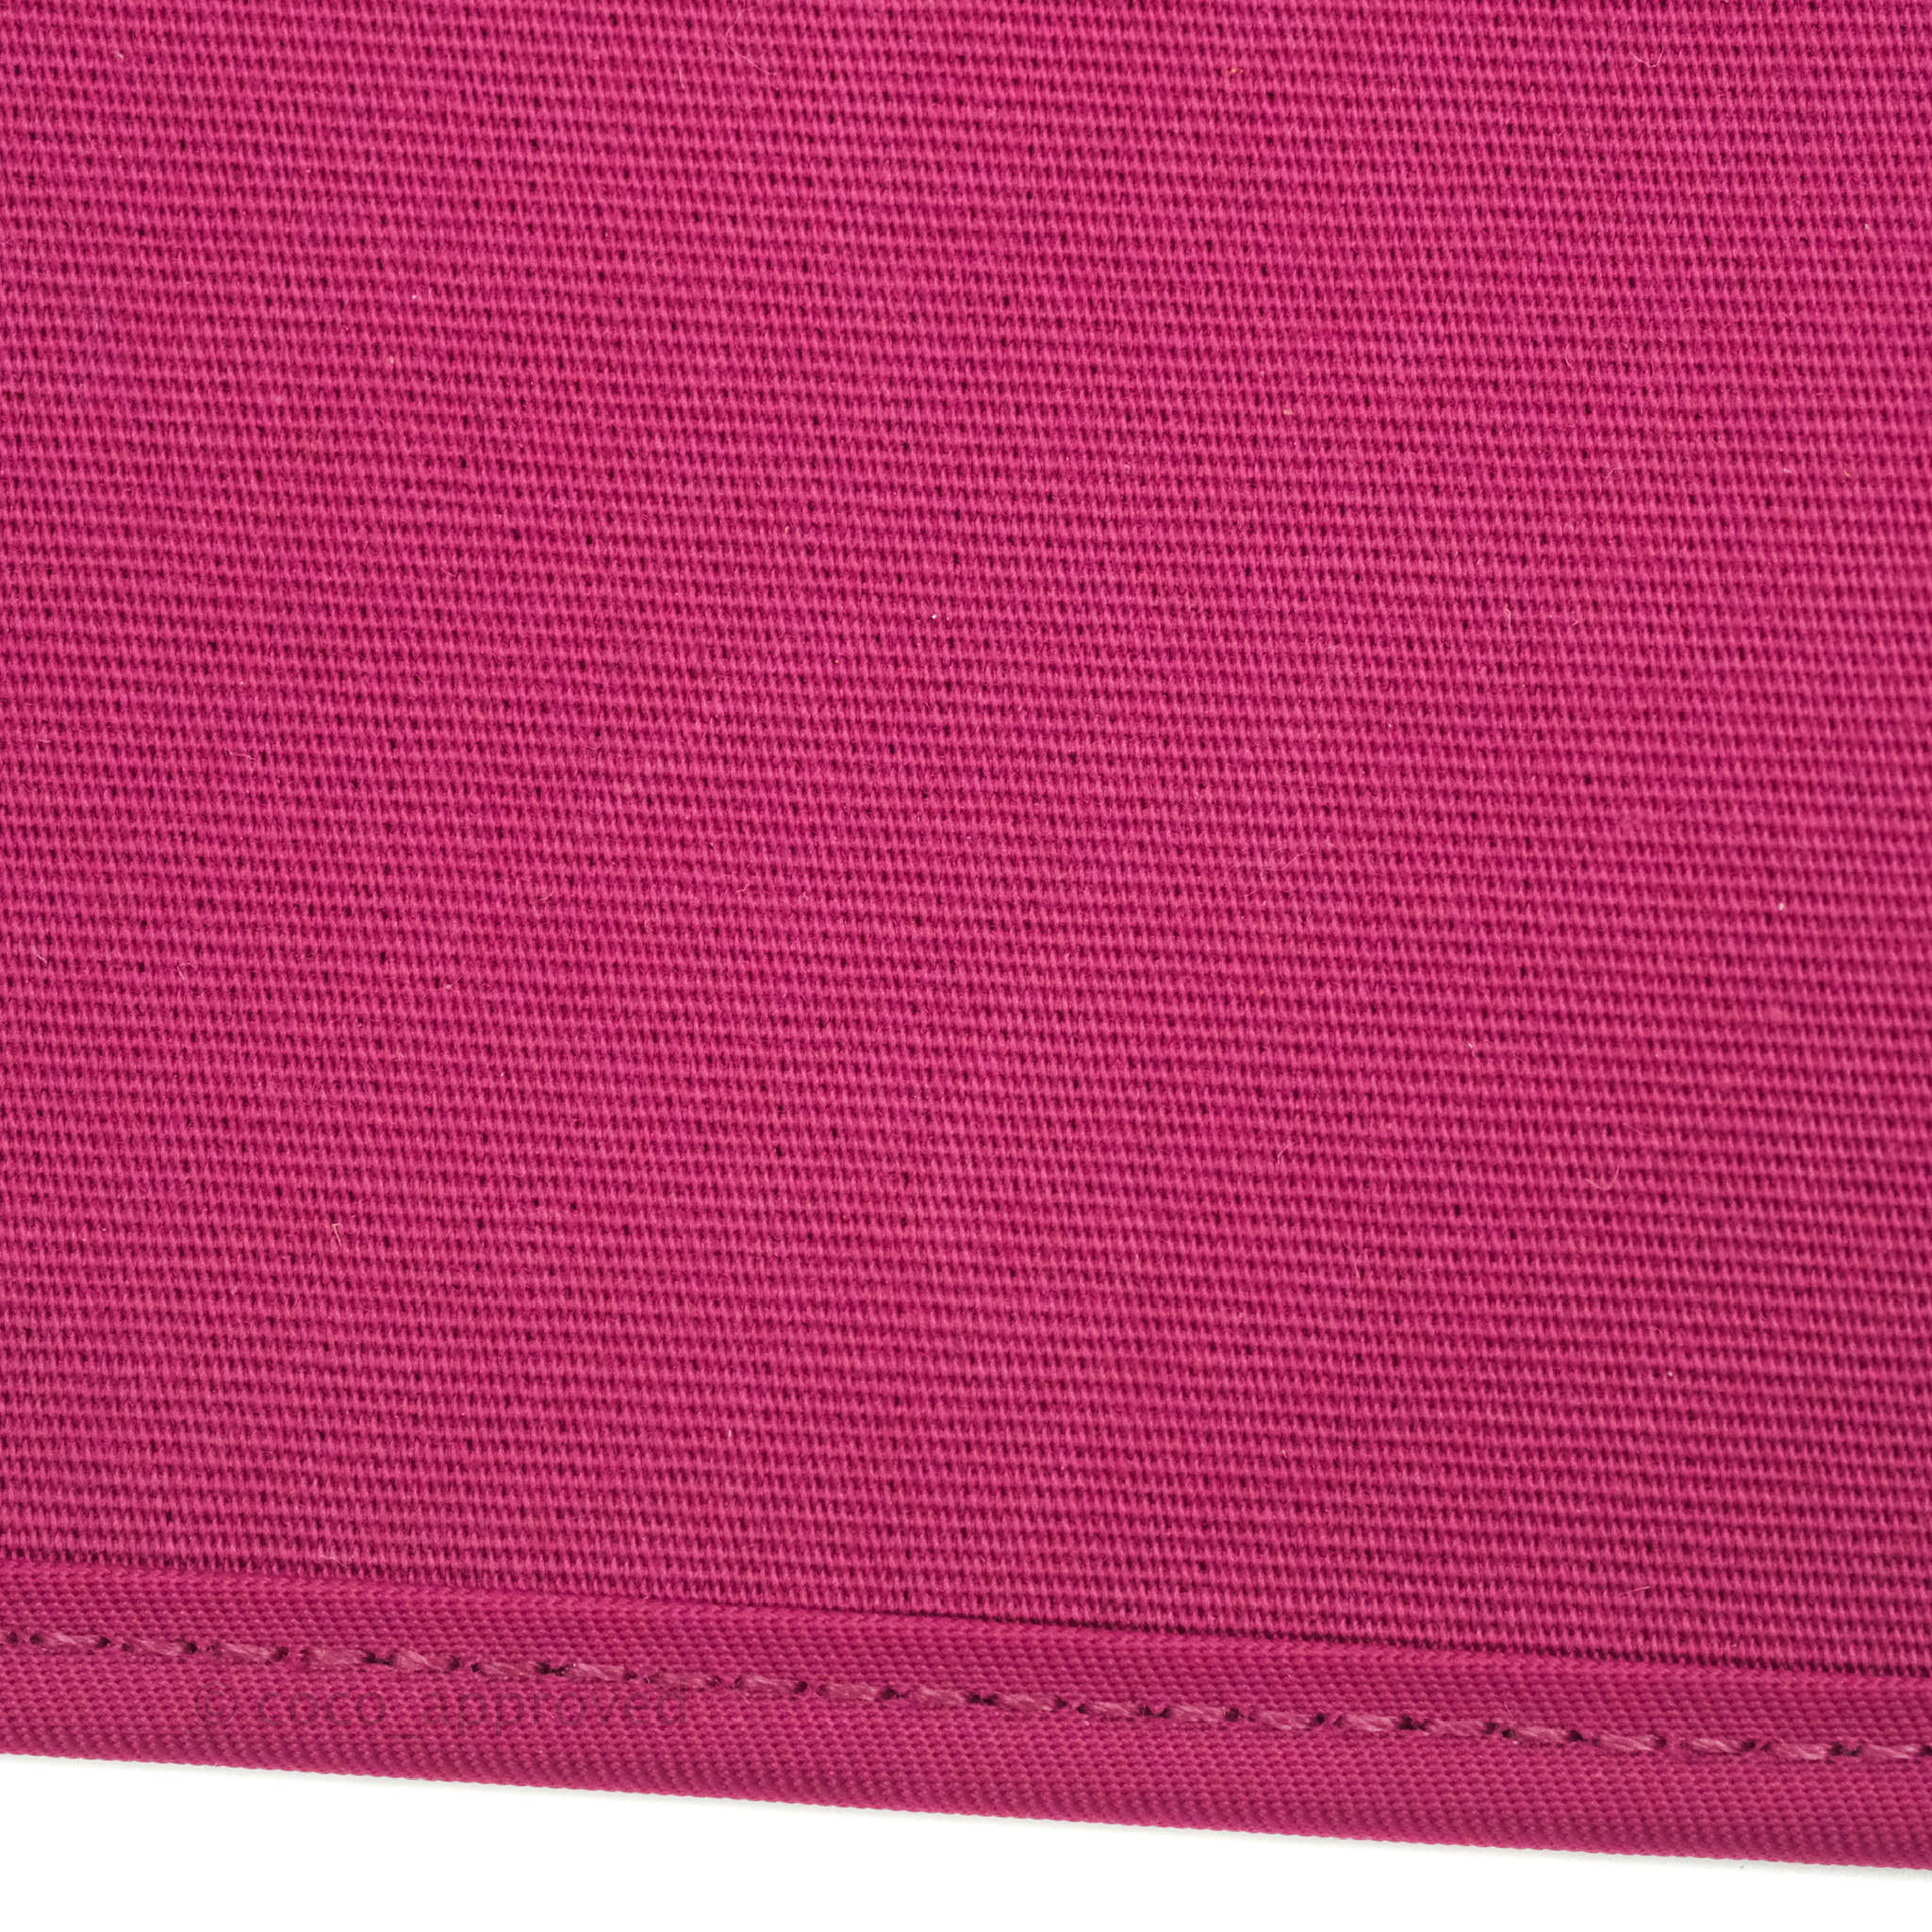 Hermès Herbag Zip 31 Rose Pourpre Tan Leather Palladium Hardware